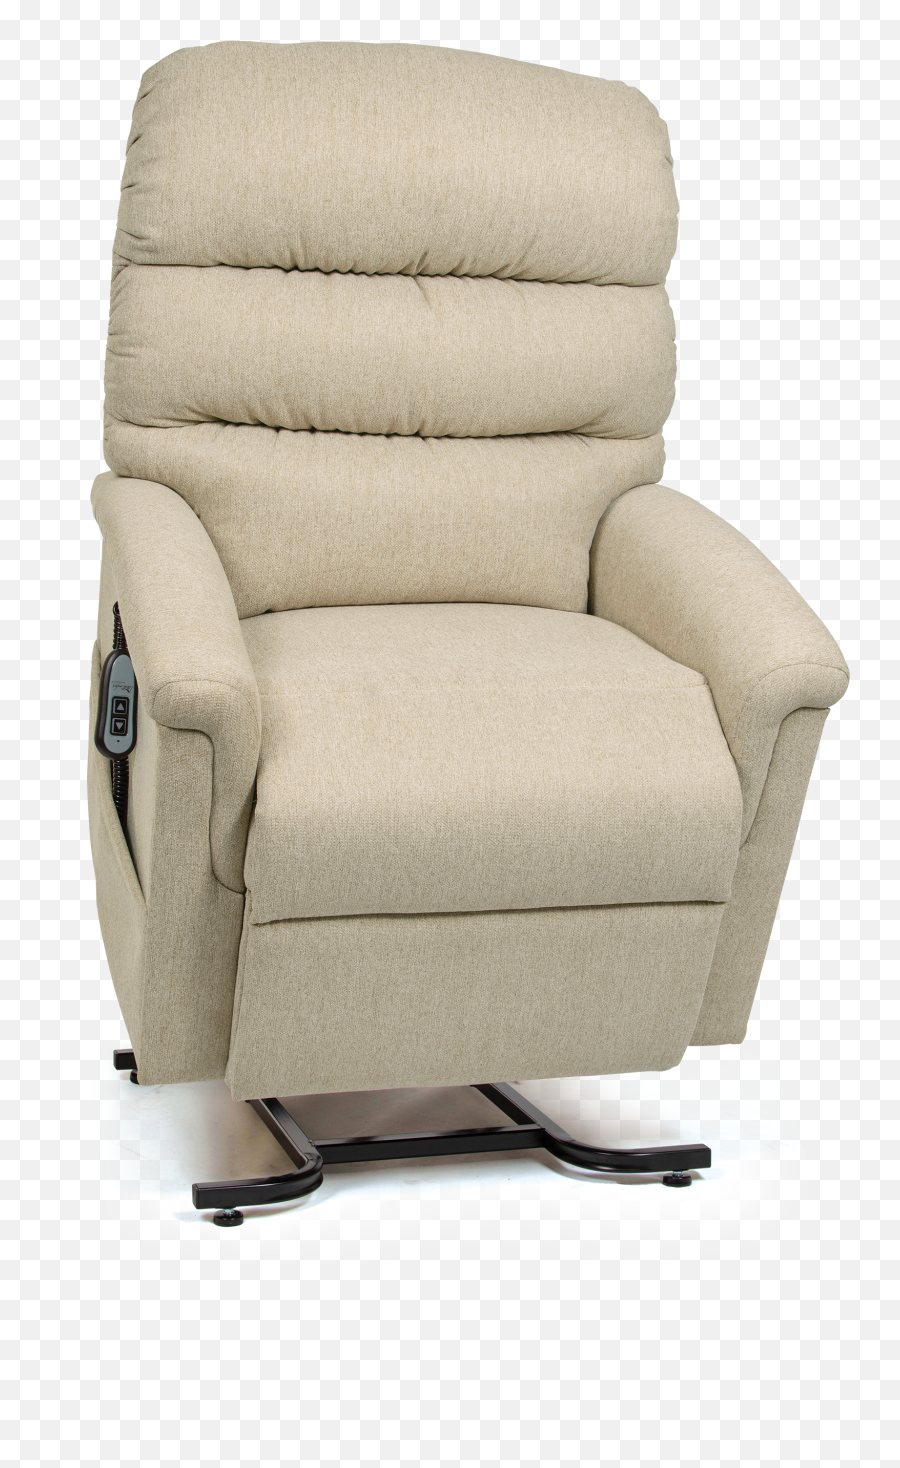 Download Hd Uc 542 M Cornstalk - Lift Chair Transparent Png Recliner,Corn Stalk Png